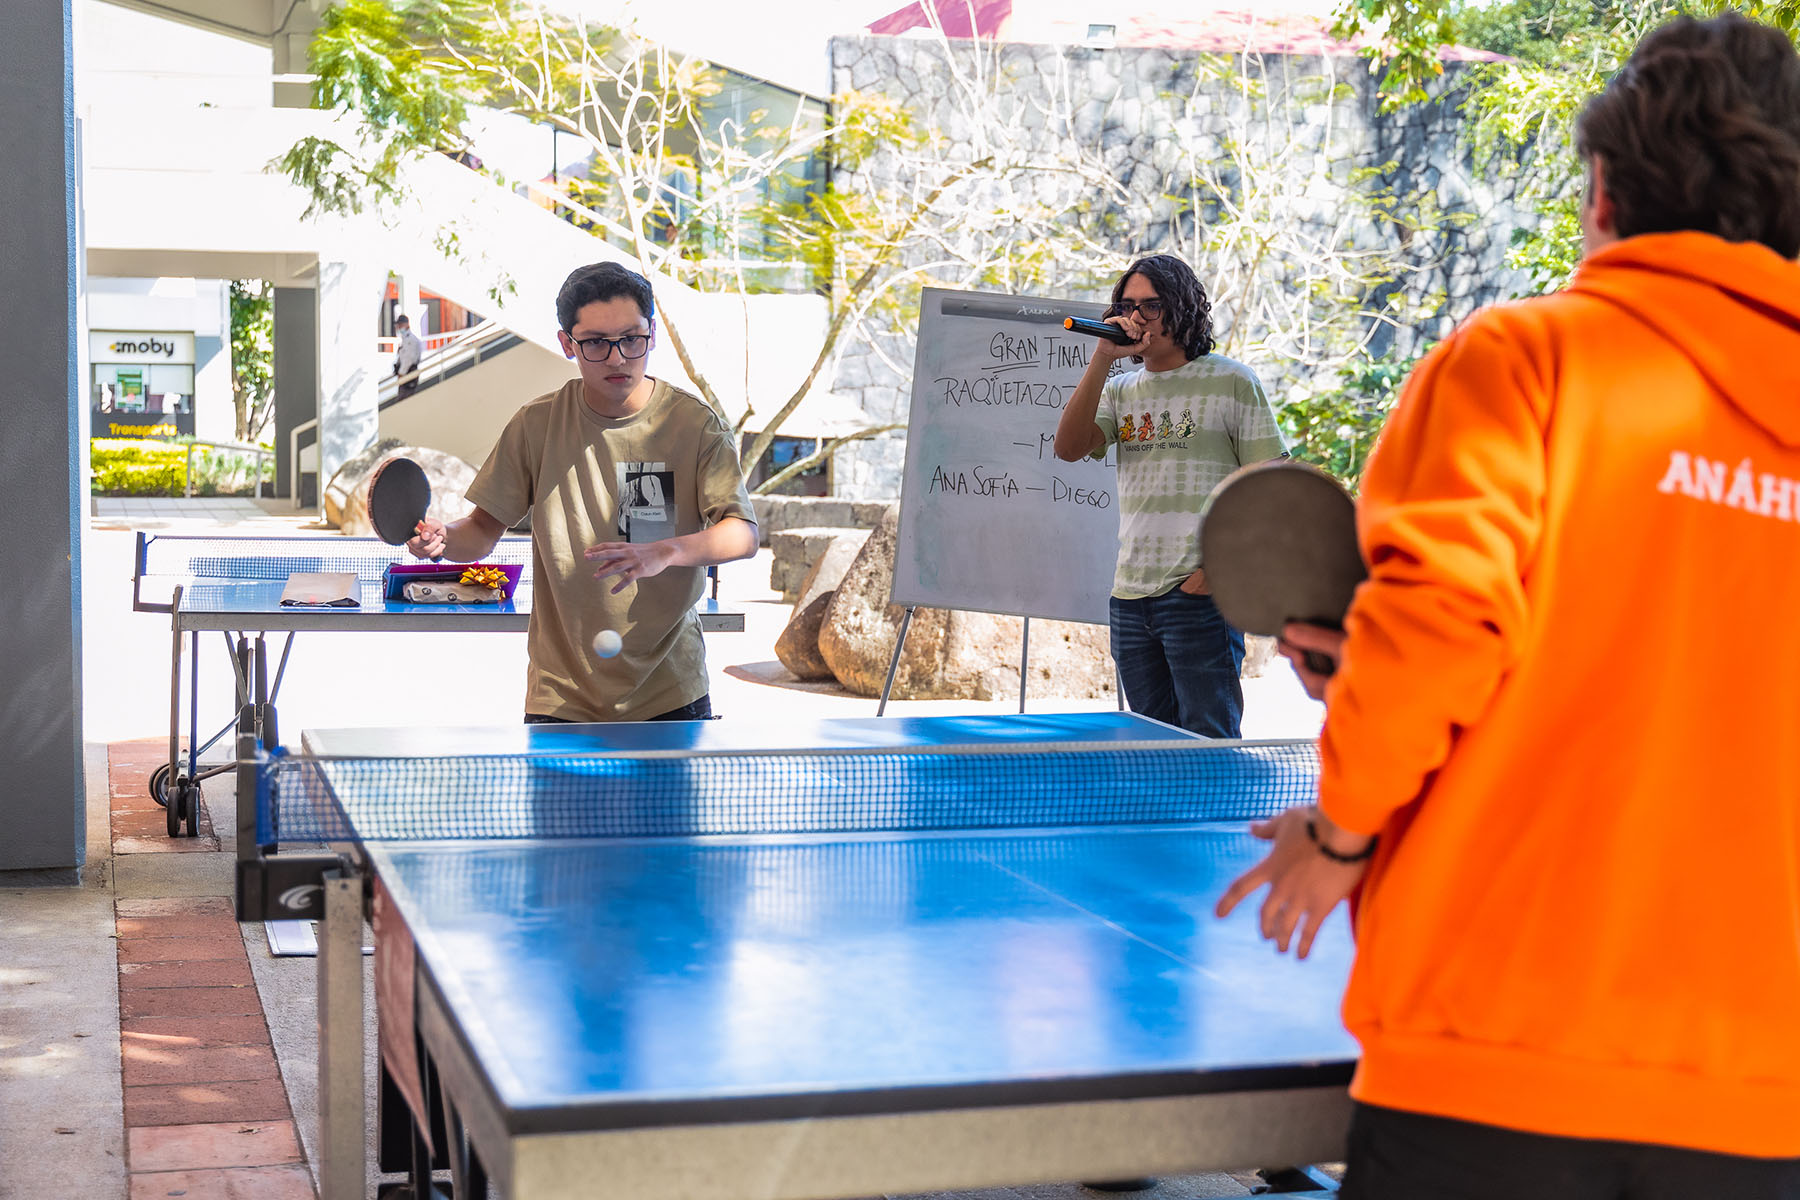 10 / 17 - Raquetazos: el Torneo de Ping Pong más Esperado del Semestre